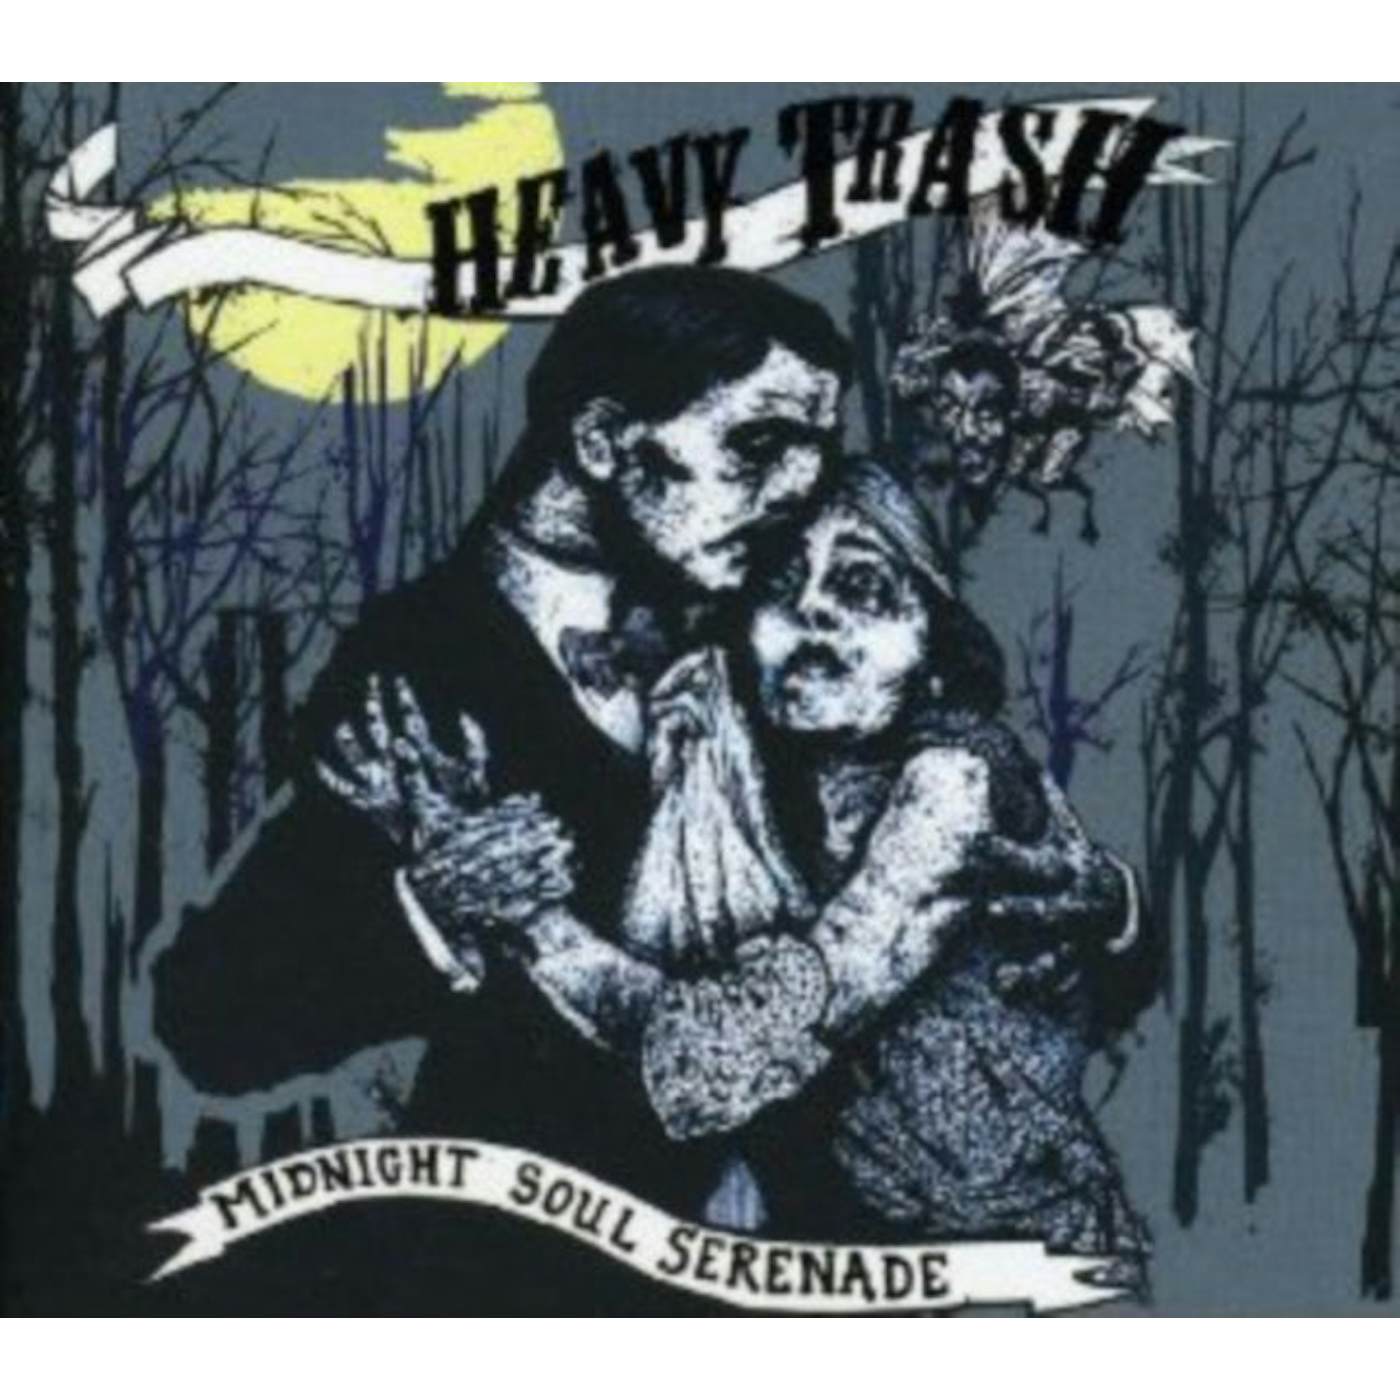 Heavy Trash CD - Midnight Soul Serenade